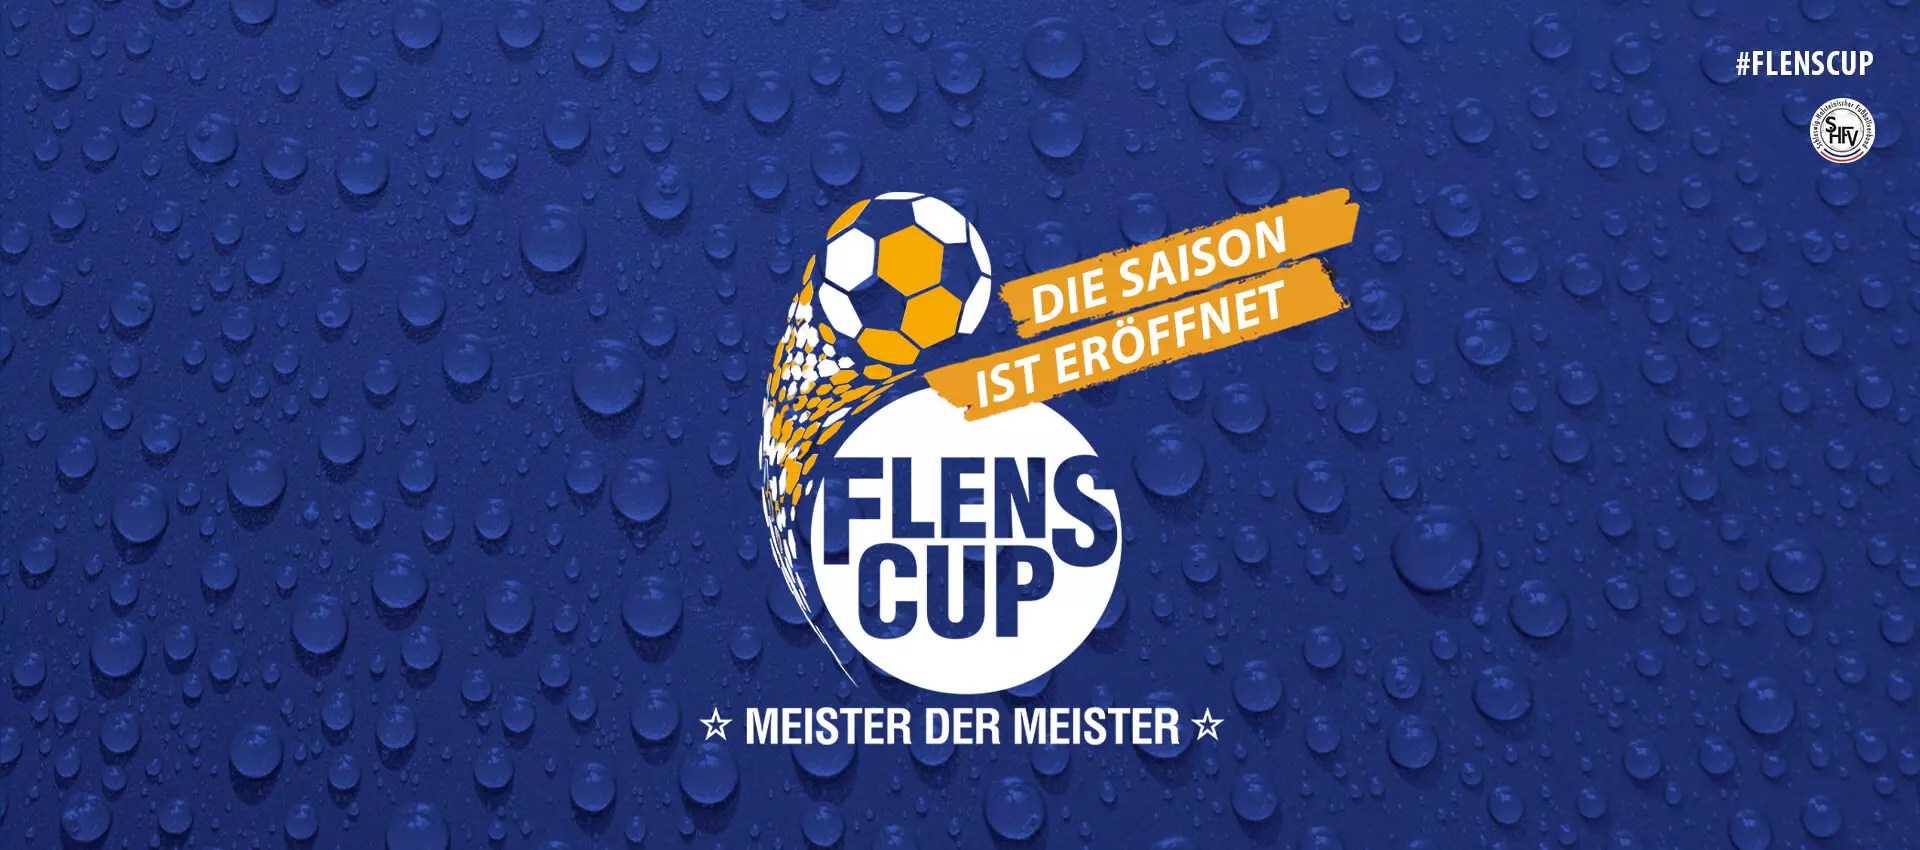 Logo vom FLENS-Cup Meister der Meister, auf dem steht das die Saison anfängt.